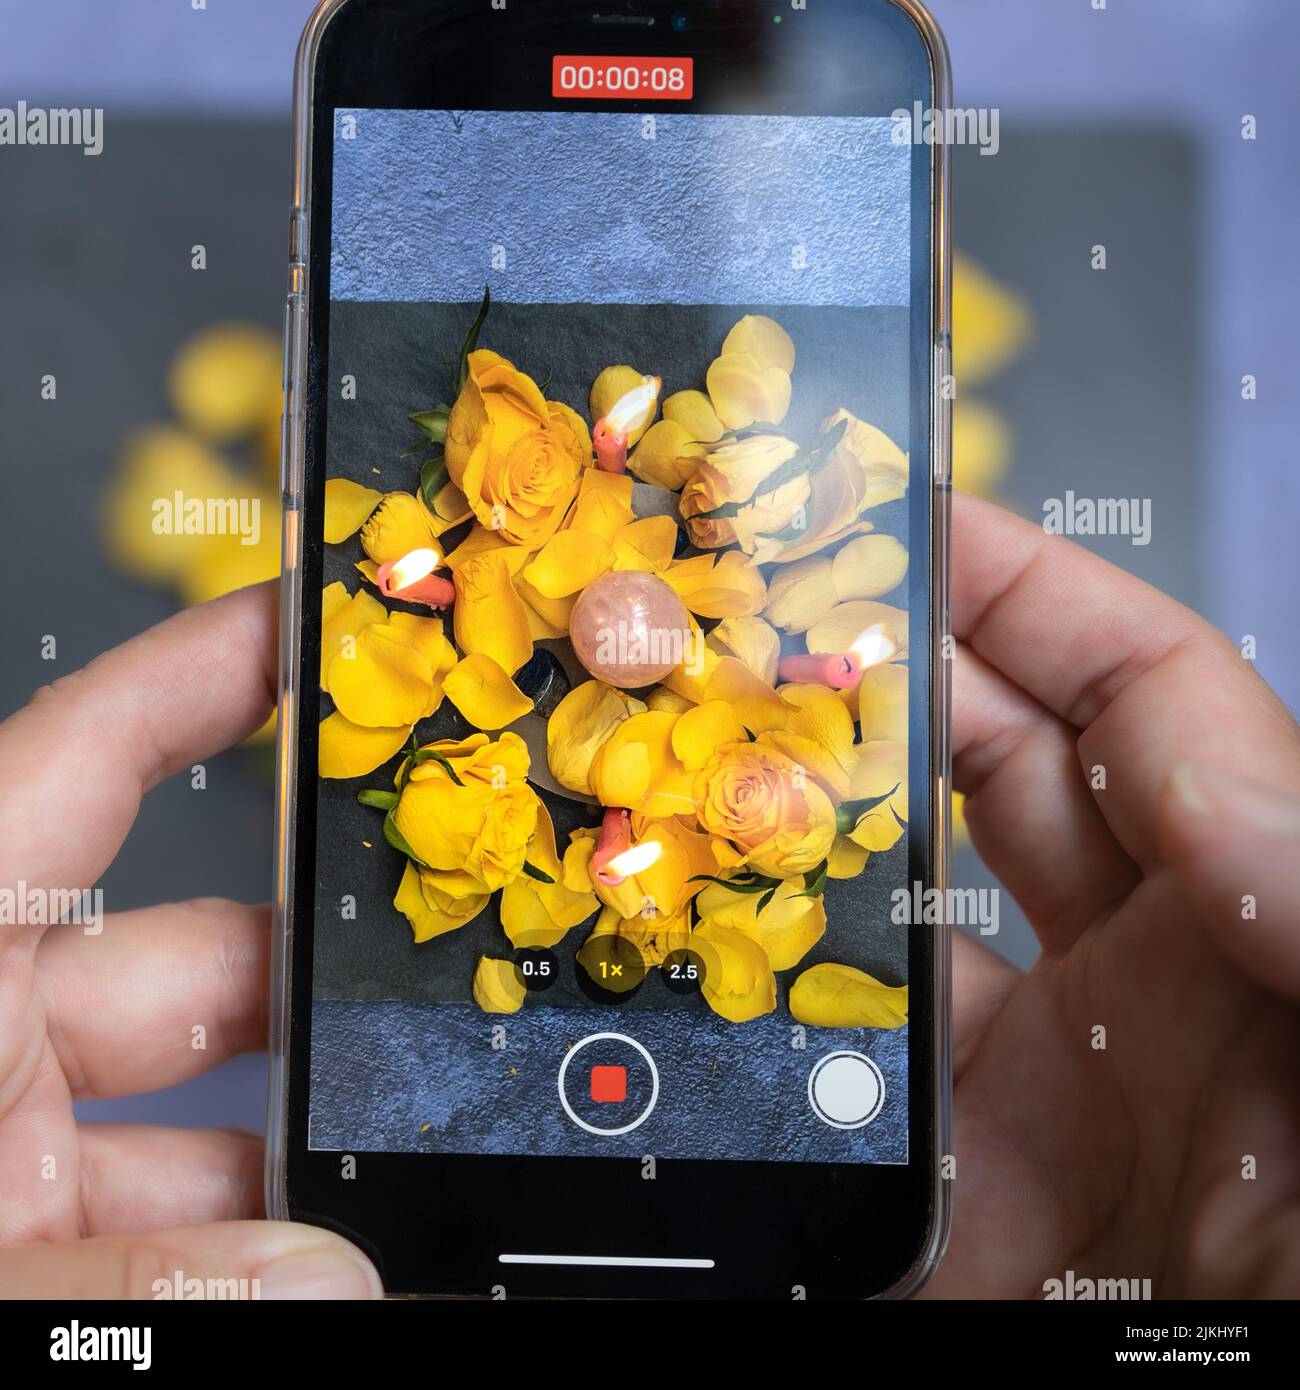 Eine Nahaufnahme eines Telefons, das ein Video von Rosenblättern und Kerzen aufzeichnet. Stockfoto